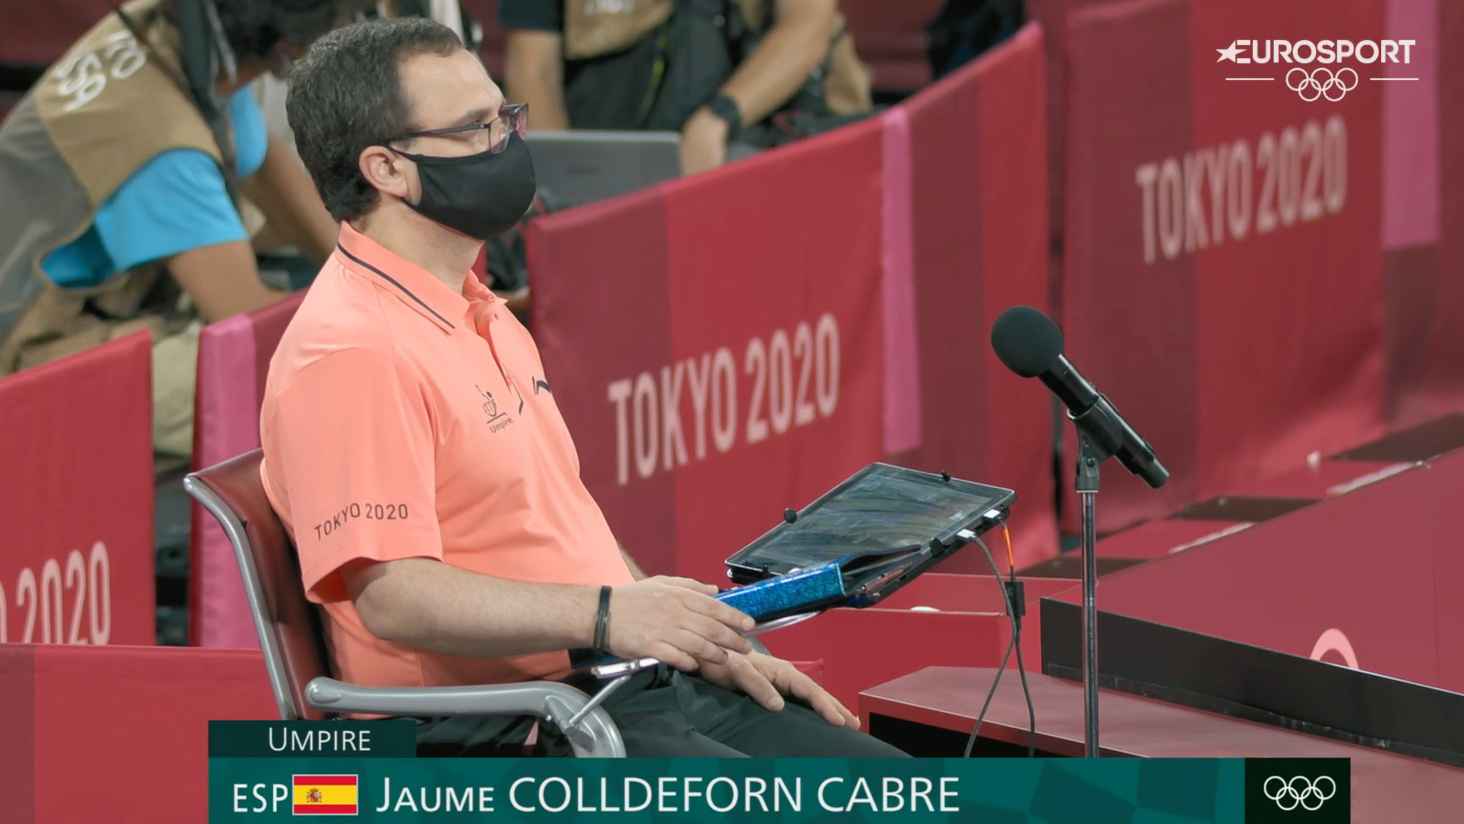 Jaume Colldeforn arbitrando la final de dobles mixto en los Juegos Olímpicos (Foto: Eurosport)